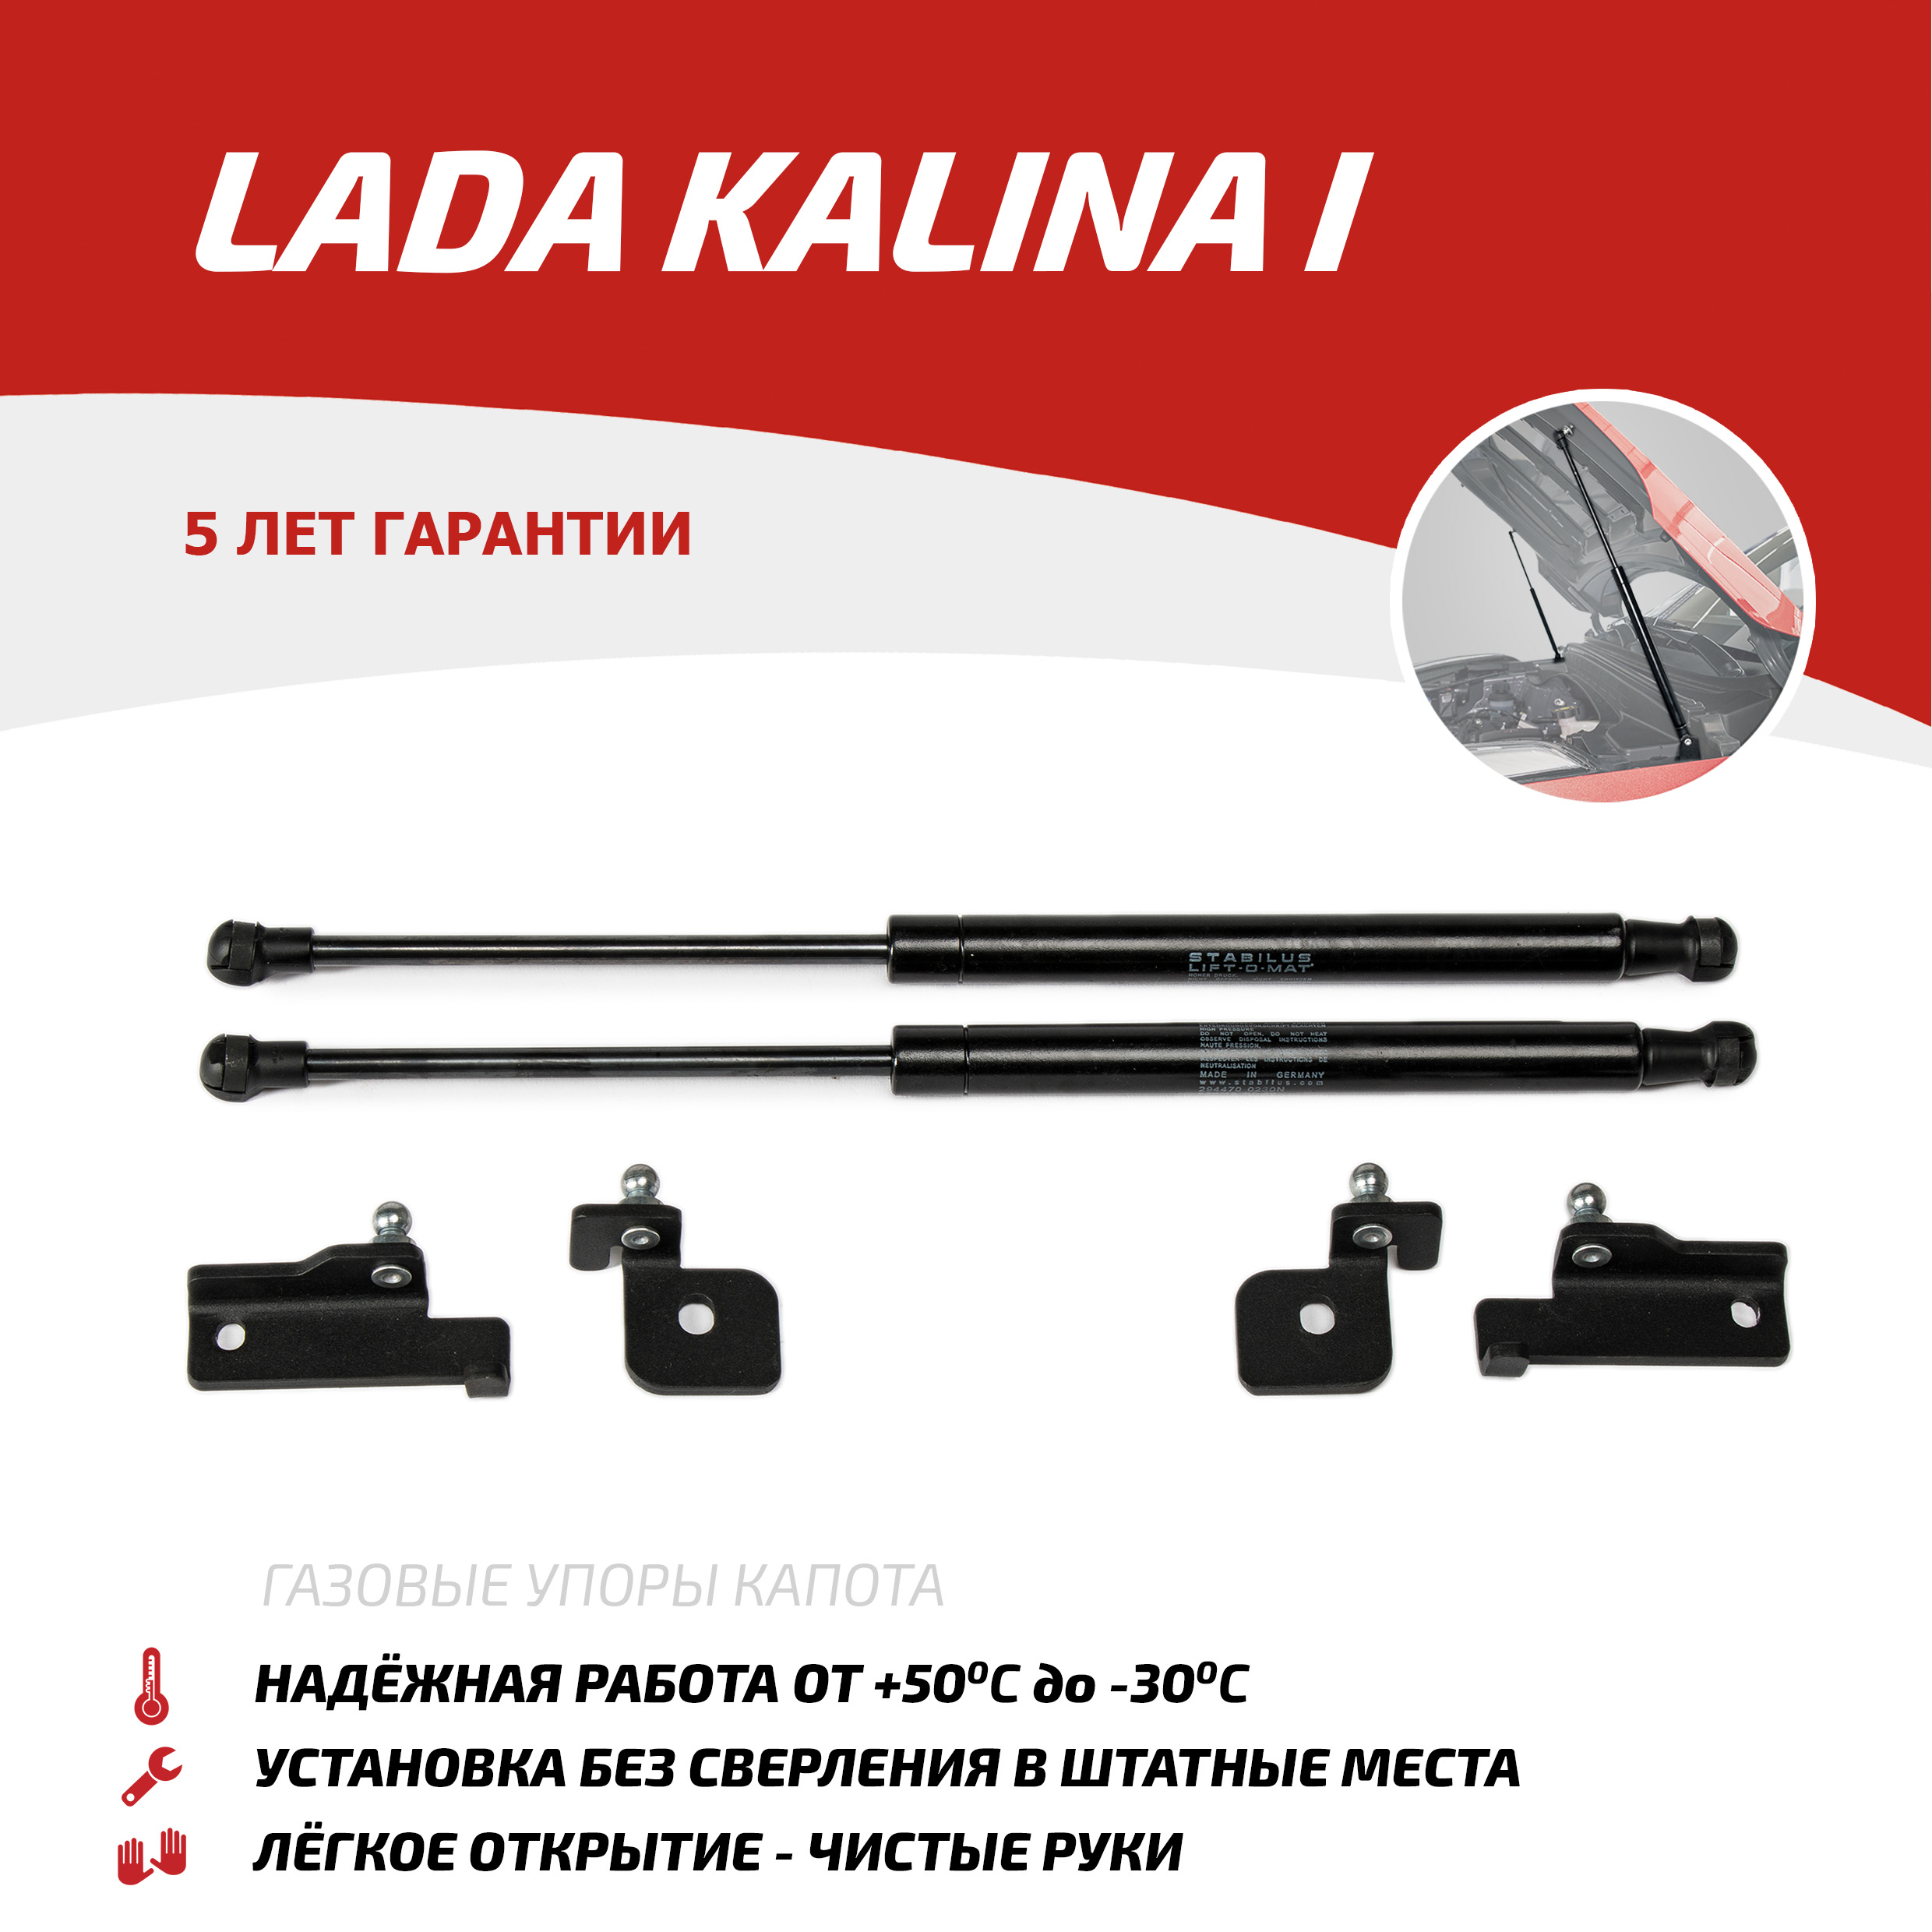 Газовые упоры капота АвтоУпор для Lada Kalina I 2004-2013, 2 шт., ULAKAL011